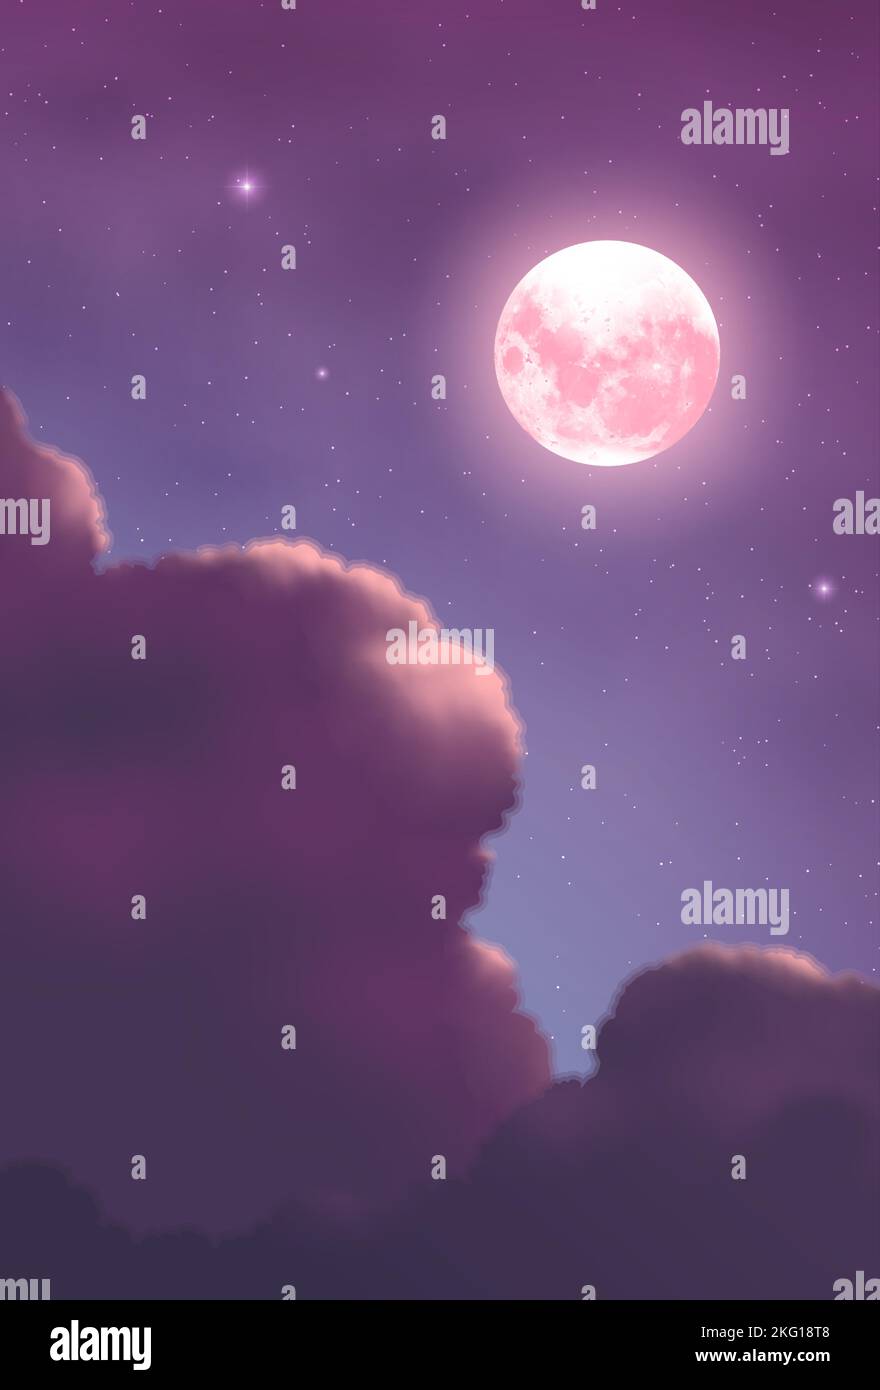 illustration vectorielle des nuages de cumulonimbus la nuit avec un fond de nuit étoilée et une grande lune pleine Illustration de Vecteur